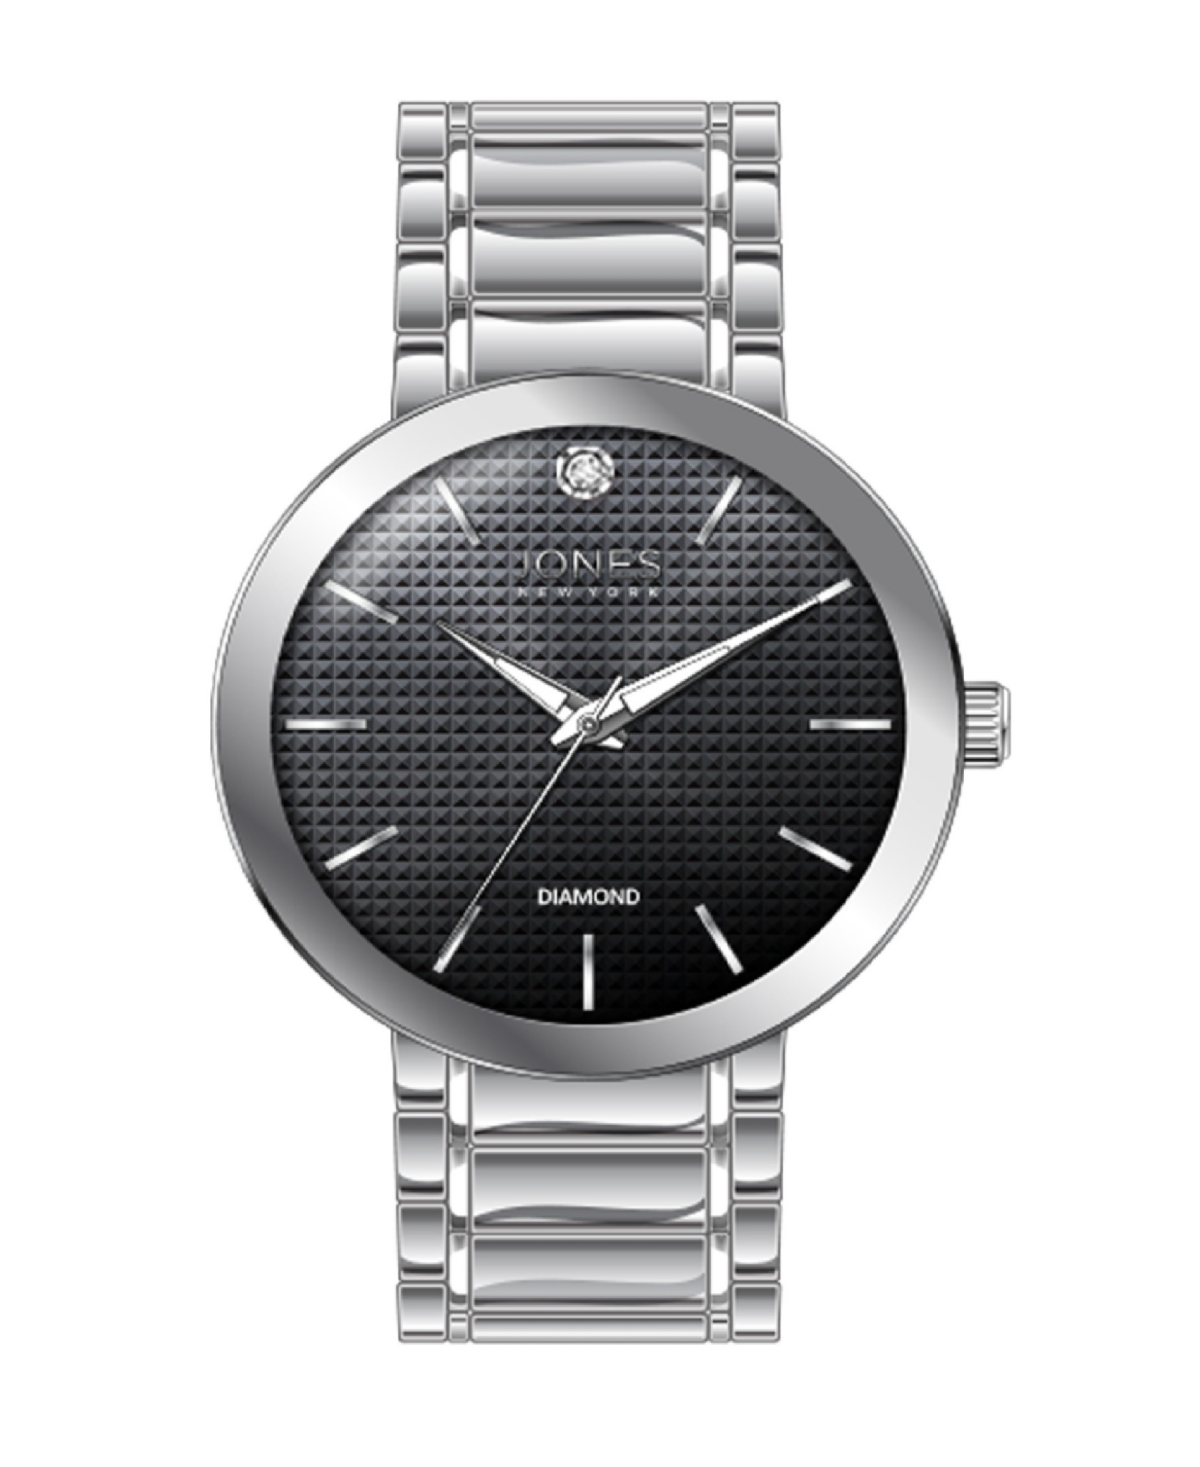 Men's Analog Shiny Silver-Tone Metal Bracelet Watch 42mm - Black, Silver